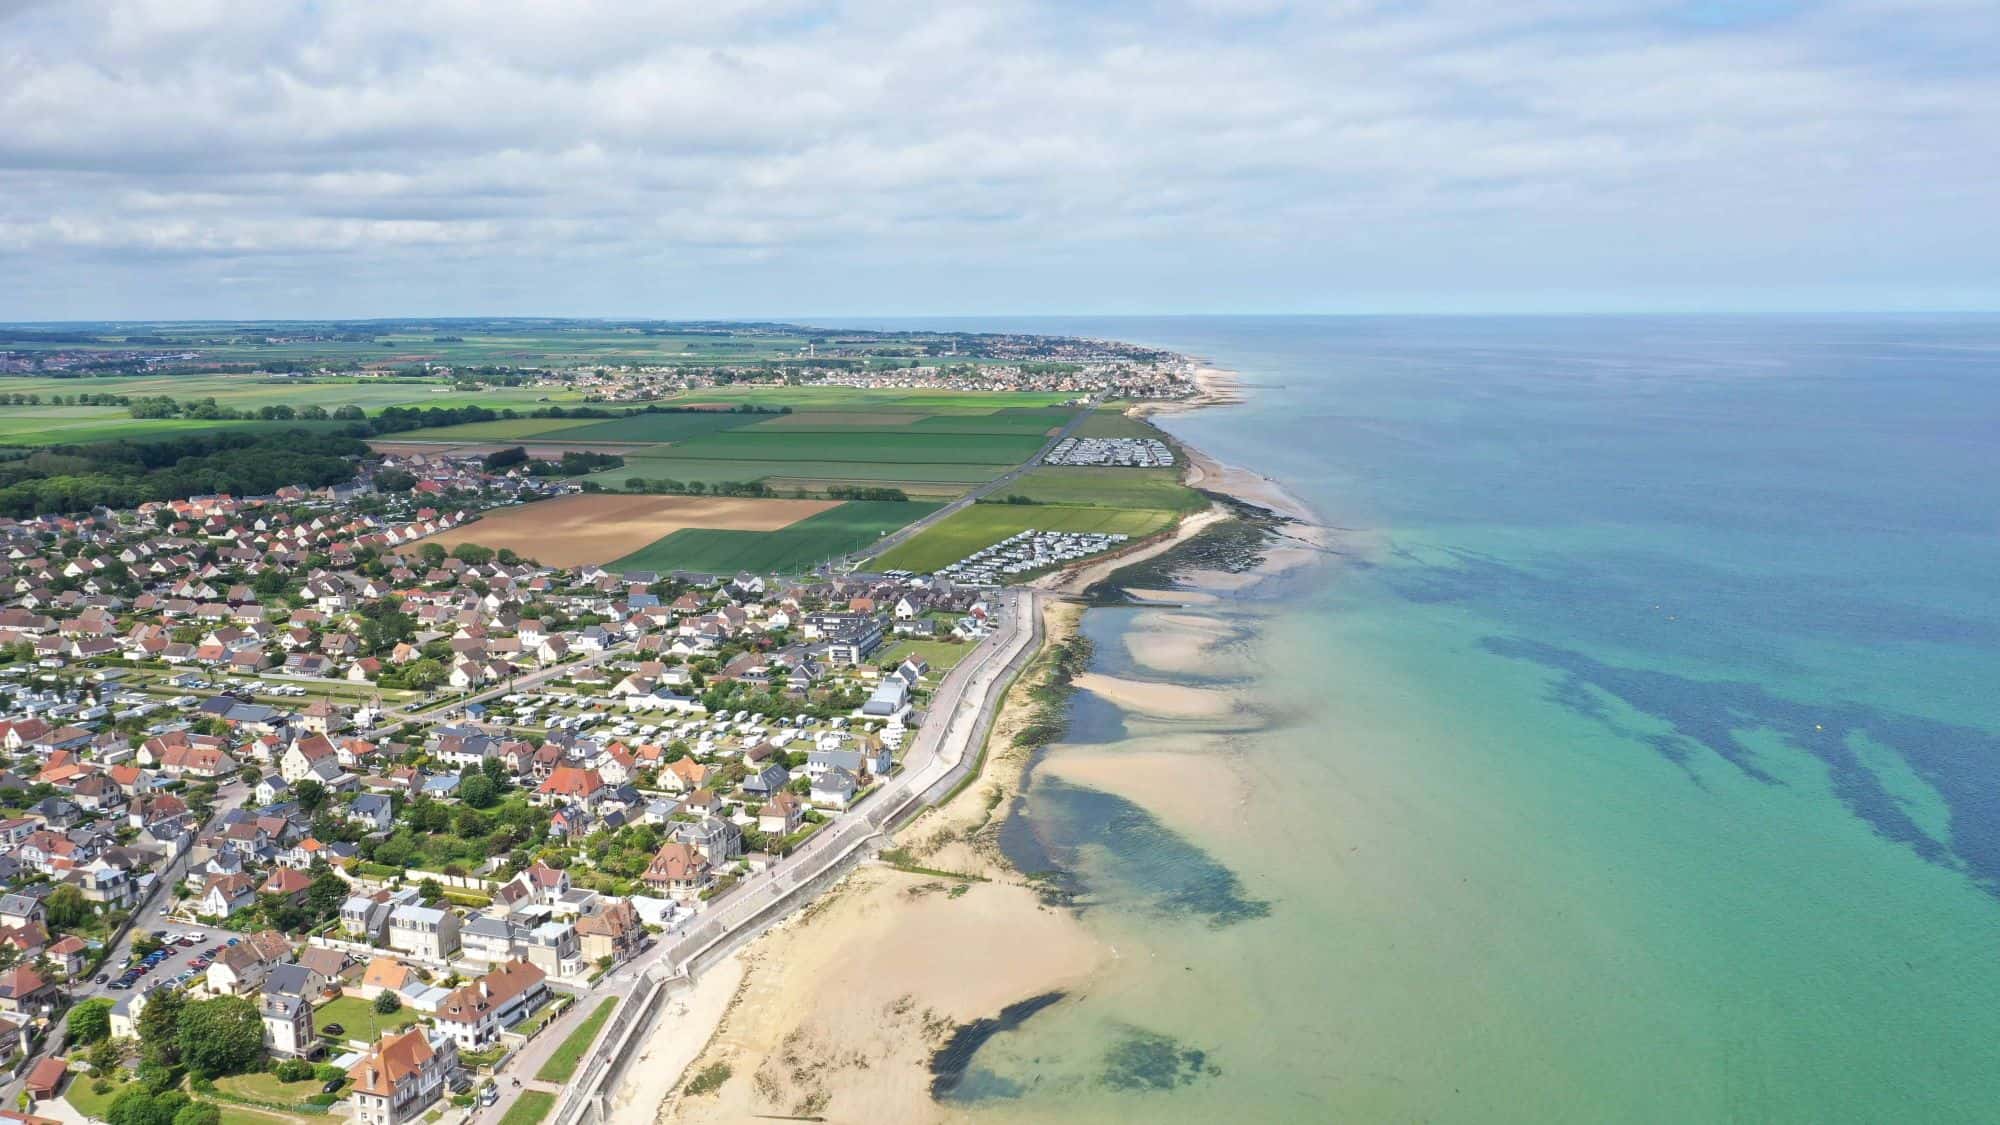 Terrain - plage de Normandie - Calvados